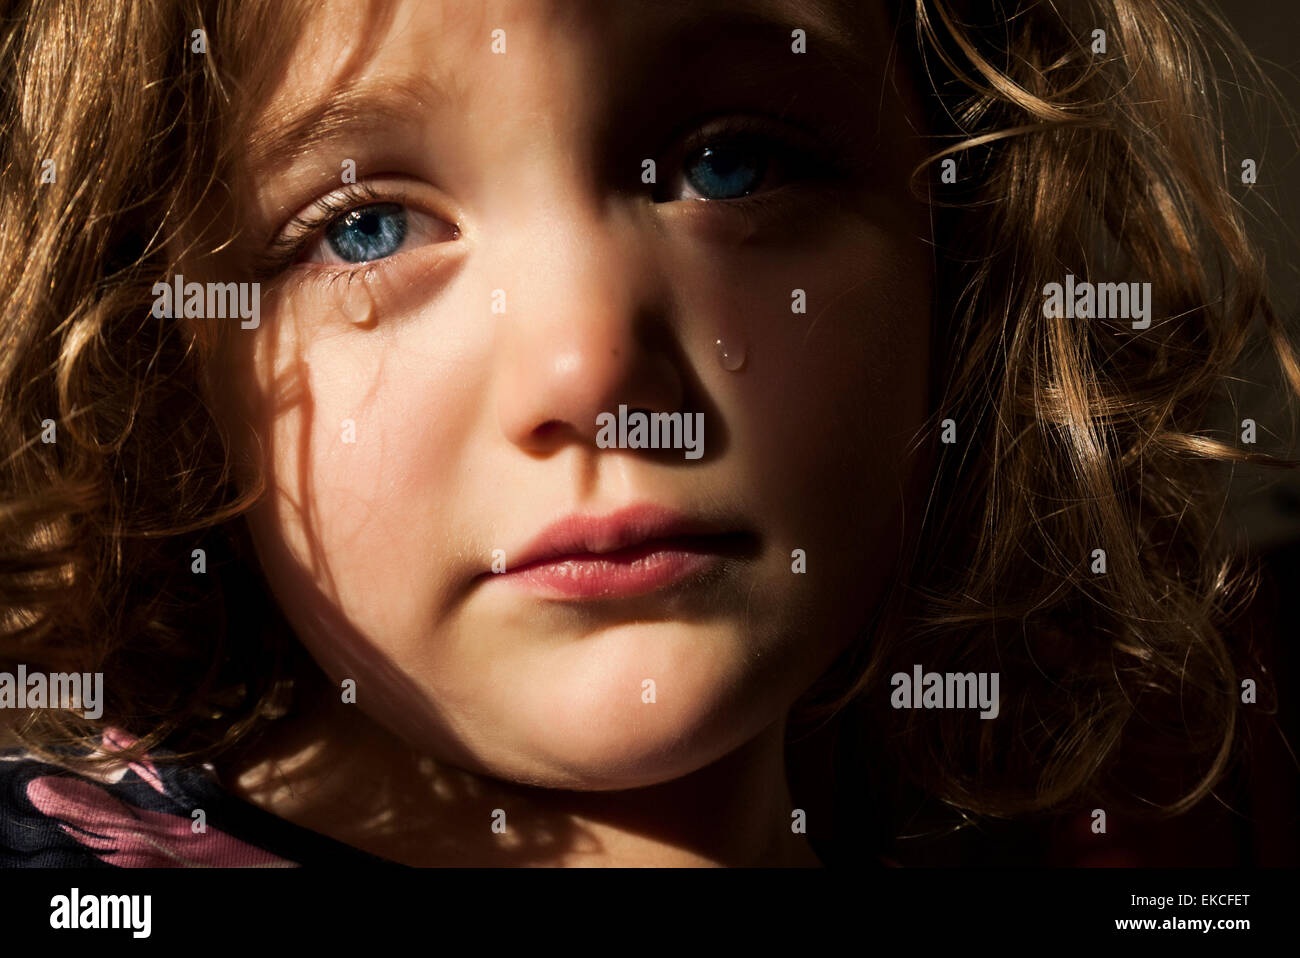 Portrait d'une fille triste avec des yeux bleus perçant pleurant Banque D'Images